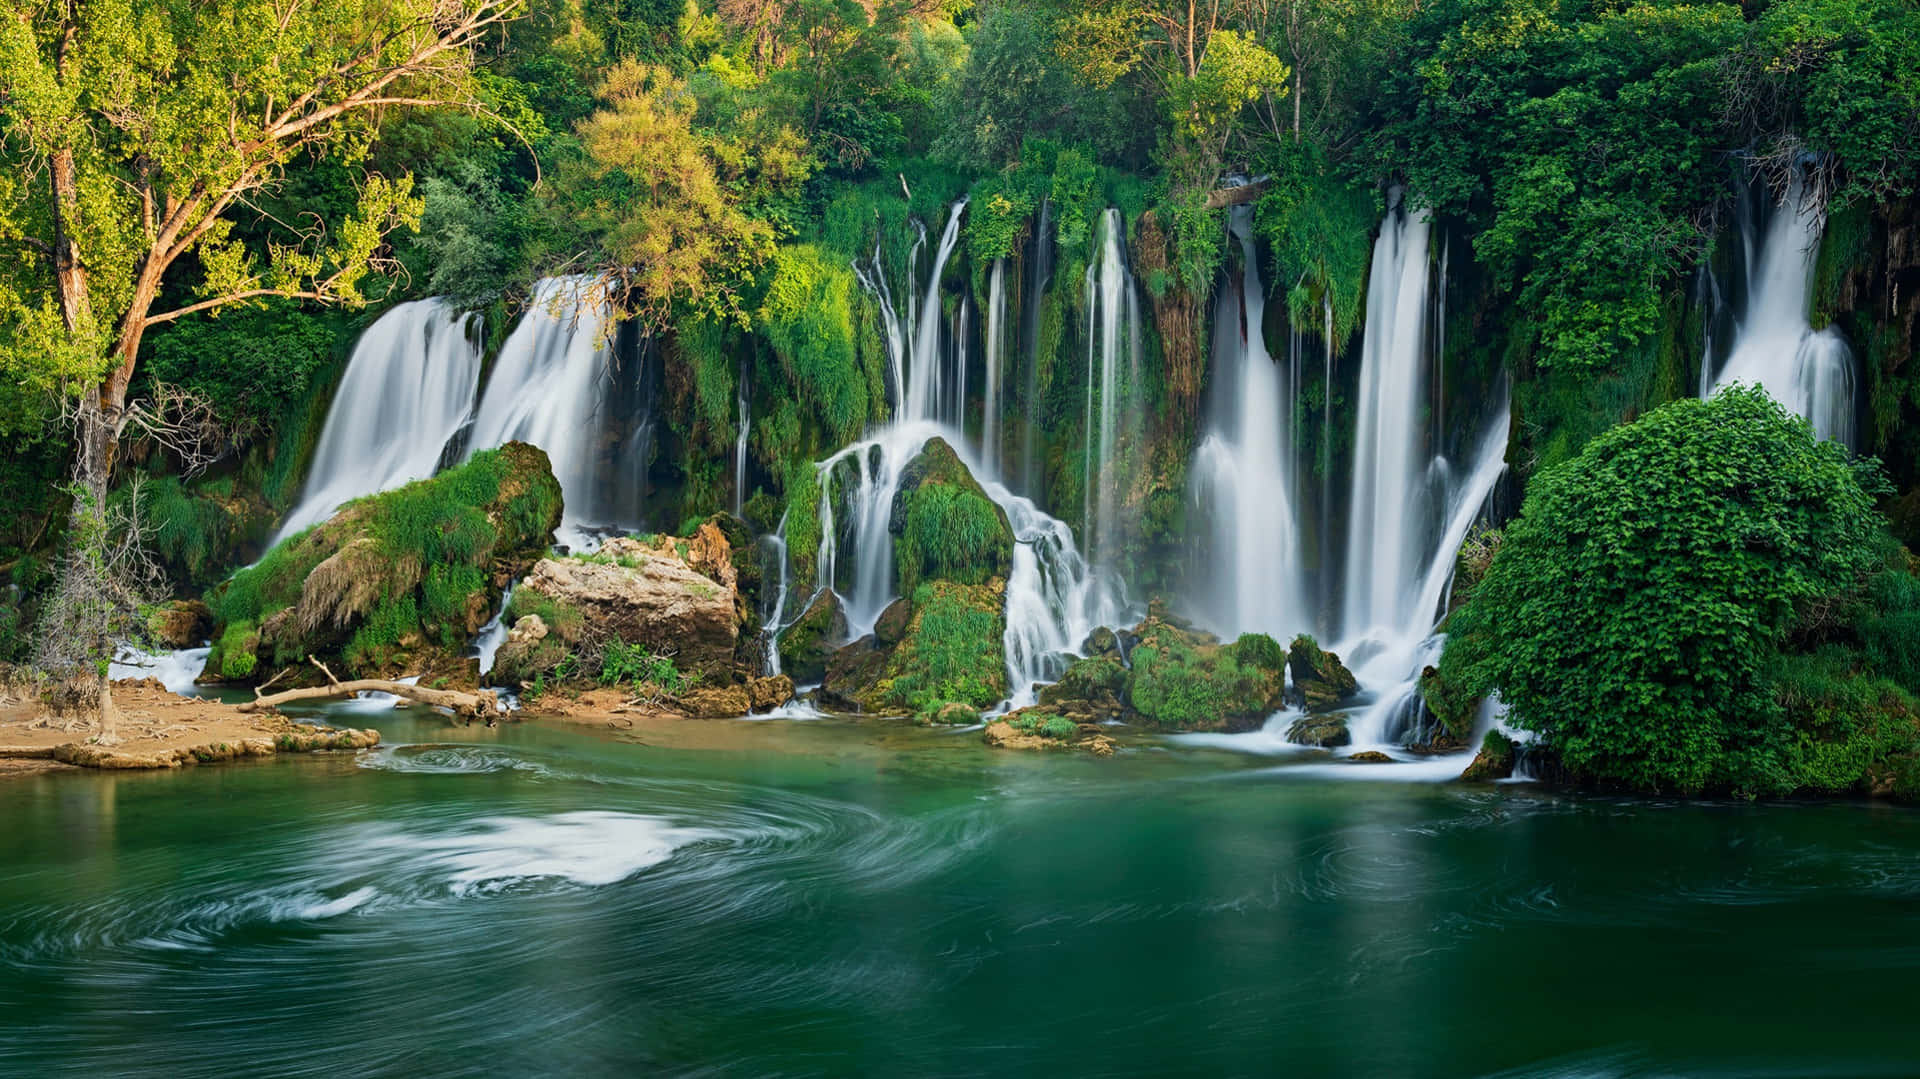 Einverborgenes Paradies - Ein Tropischer Grüner Dschungel Mit Einem Atemberaubenden Wasserfall.